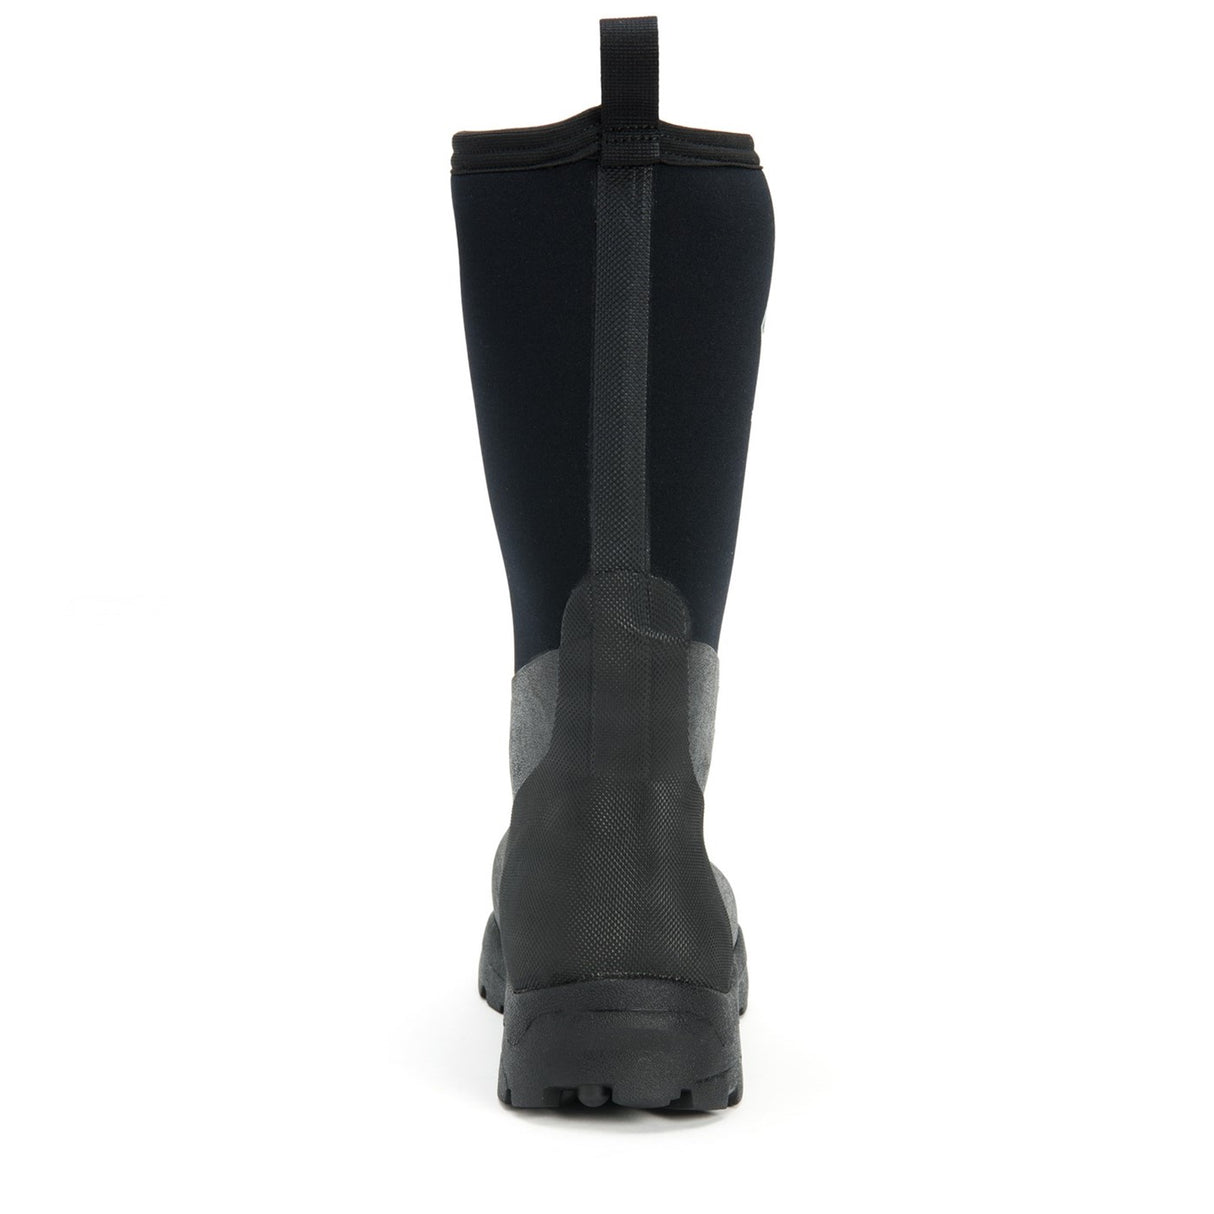 Unisex Derwent II Short Boots Black